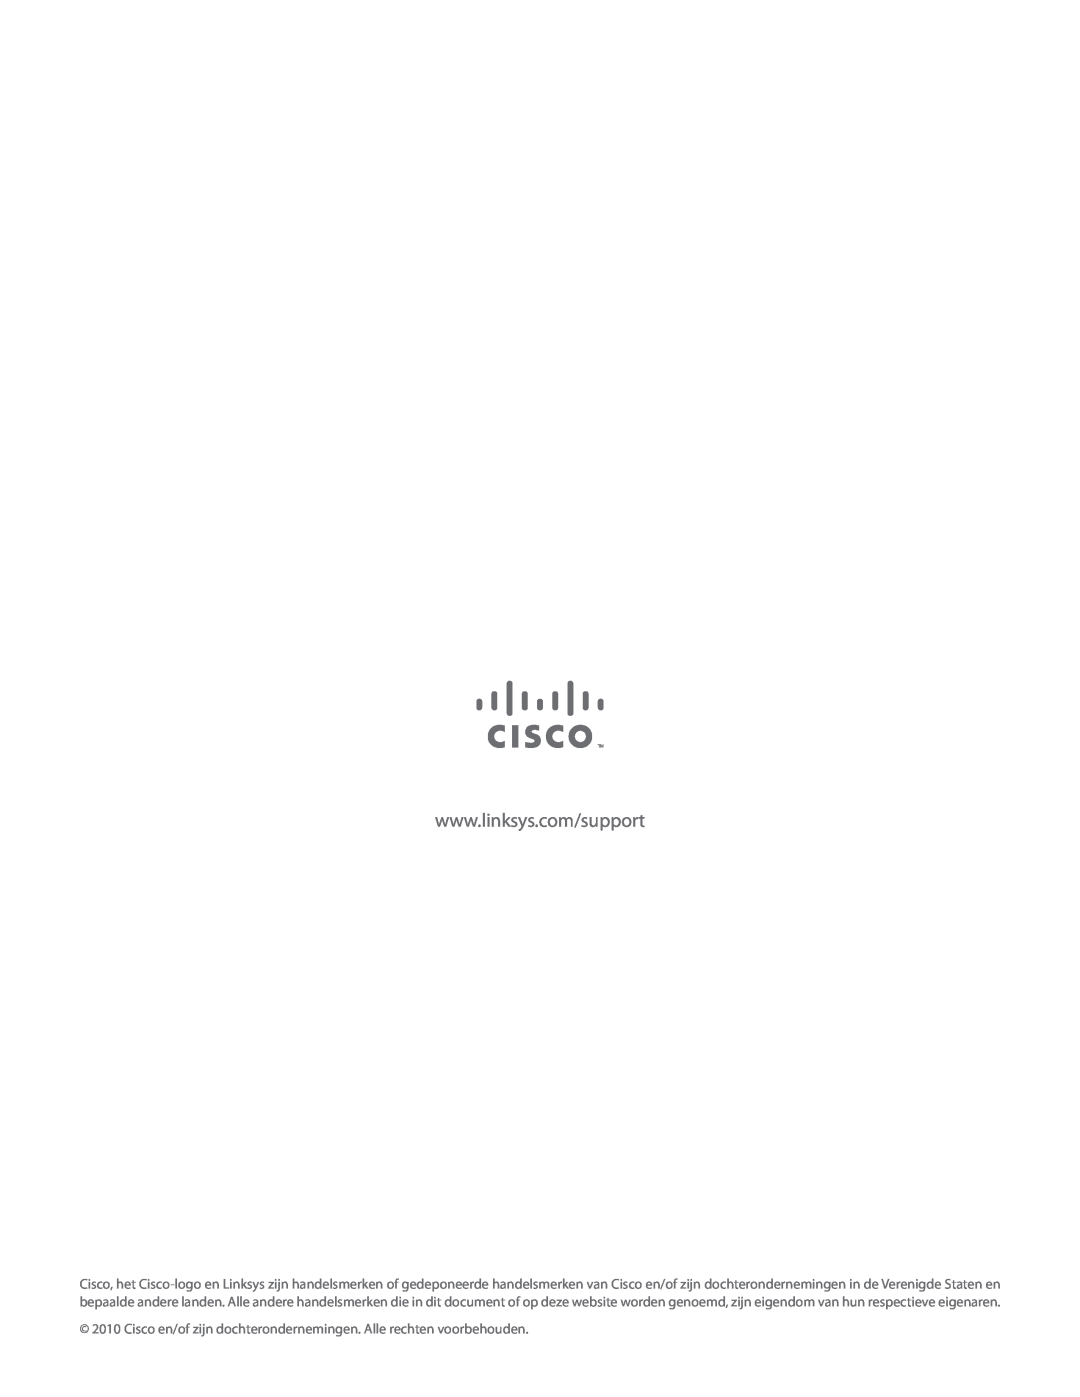 Cisco Systems AE1000 manual Cisco en/of zijn dochterondernemingen. Alle rechten voorbehouden 